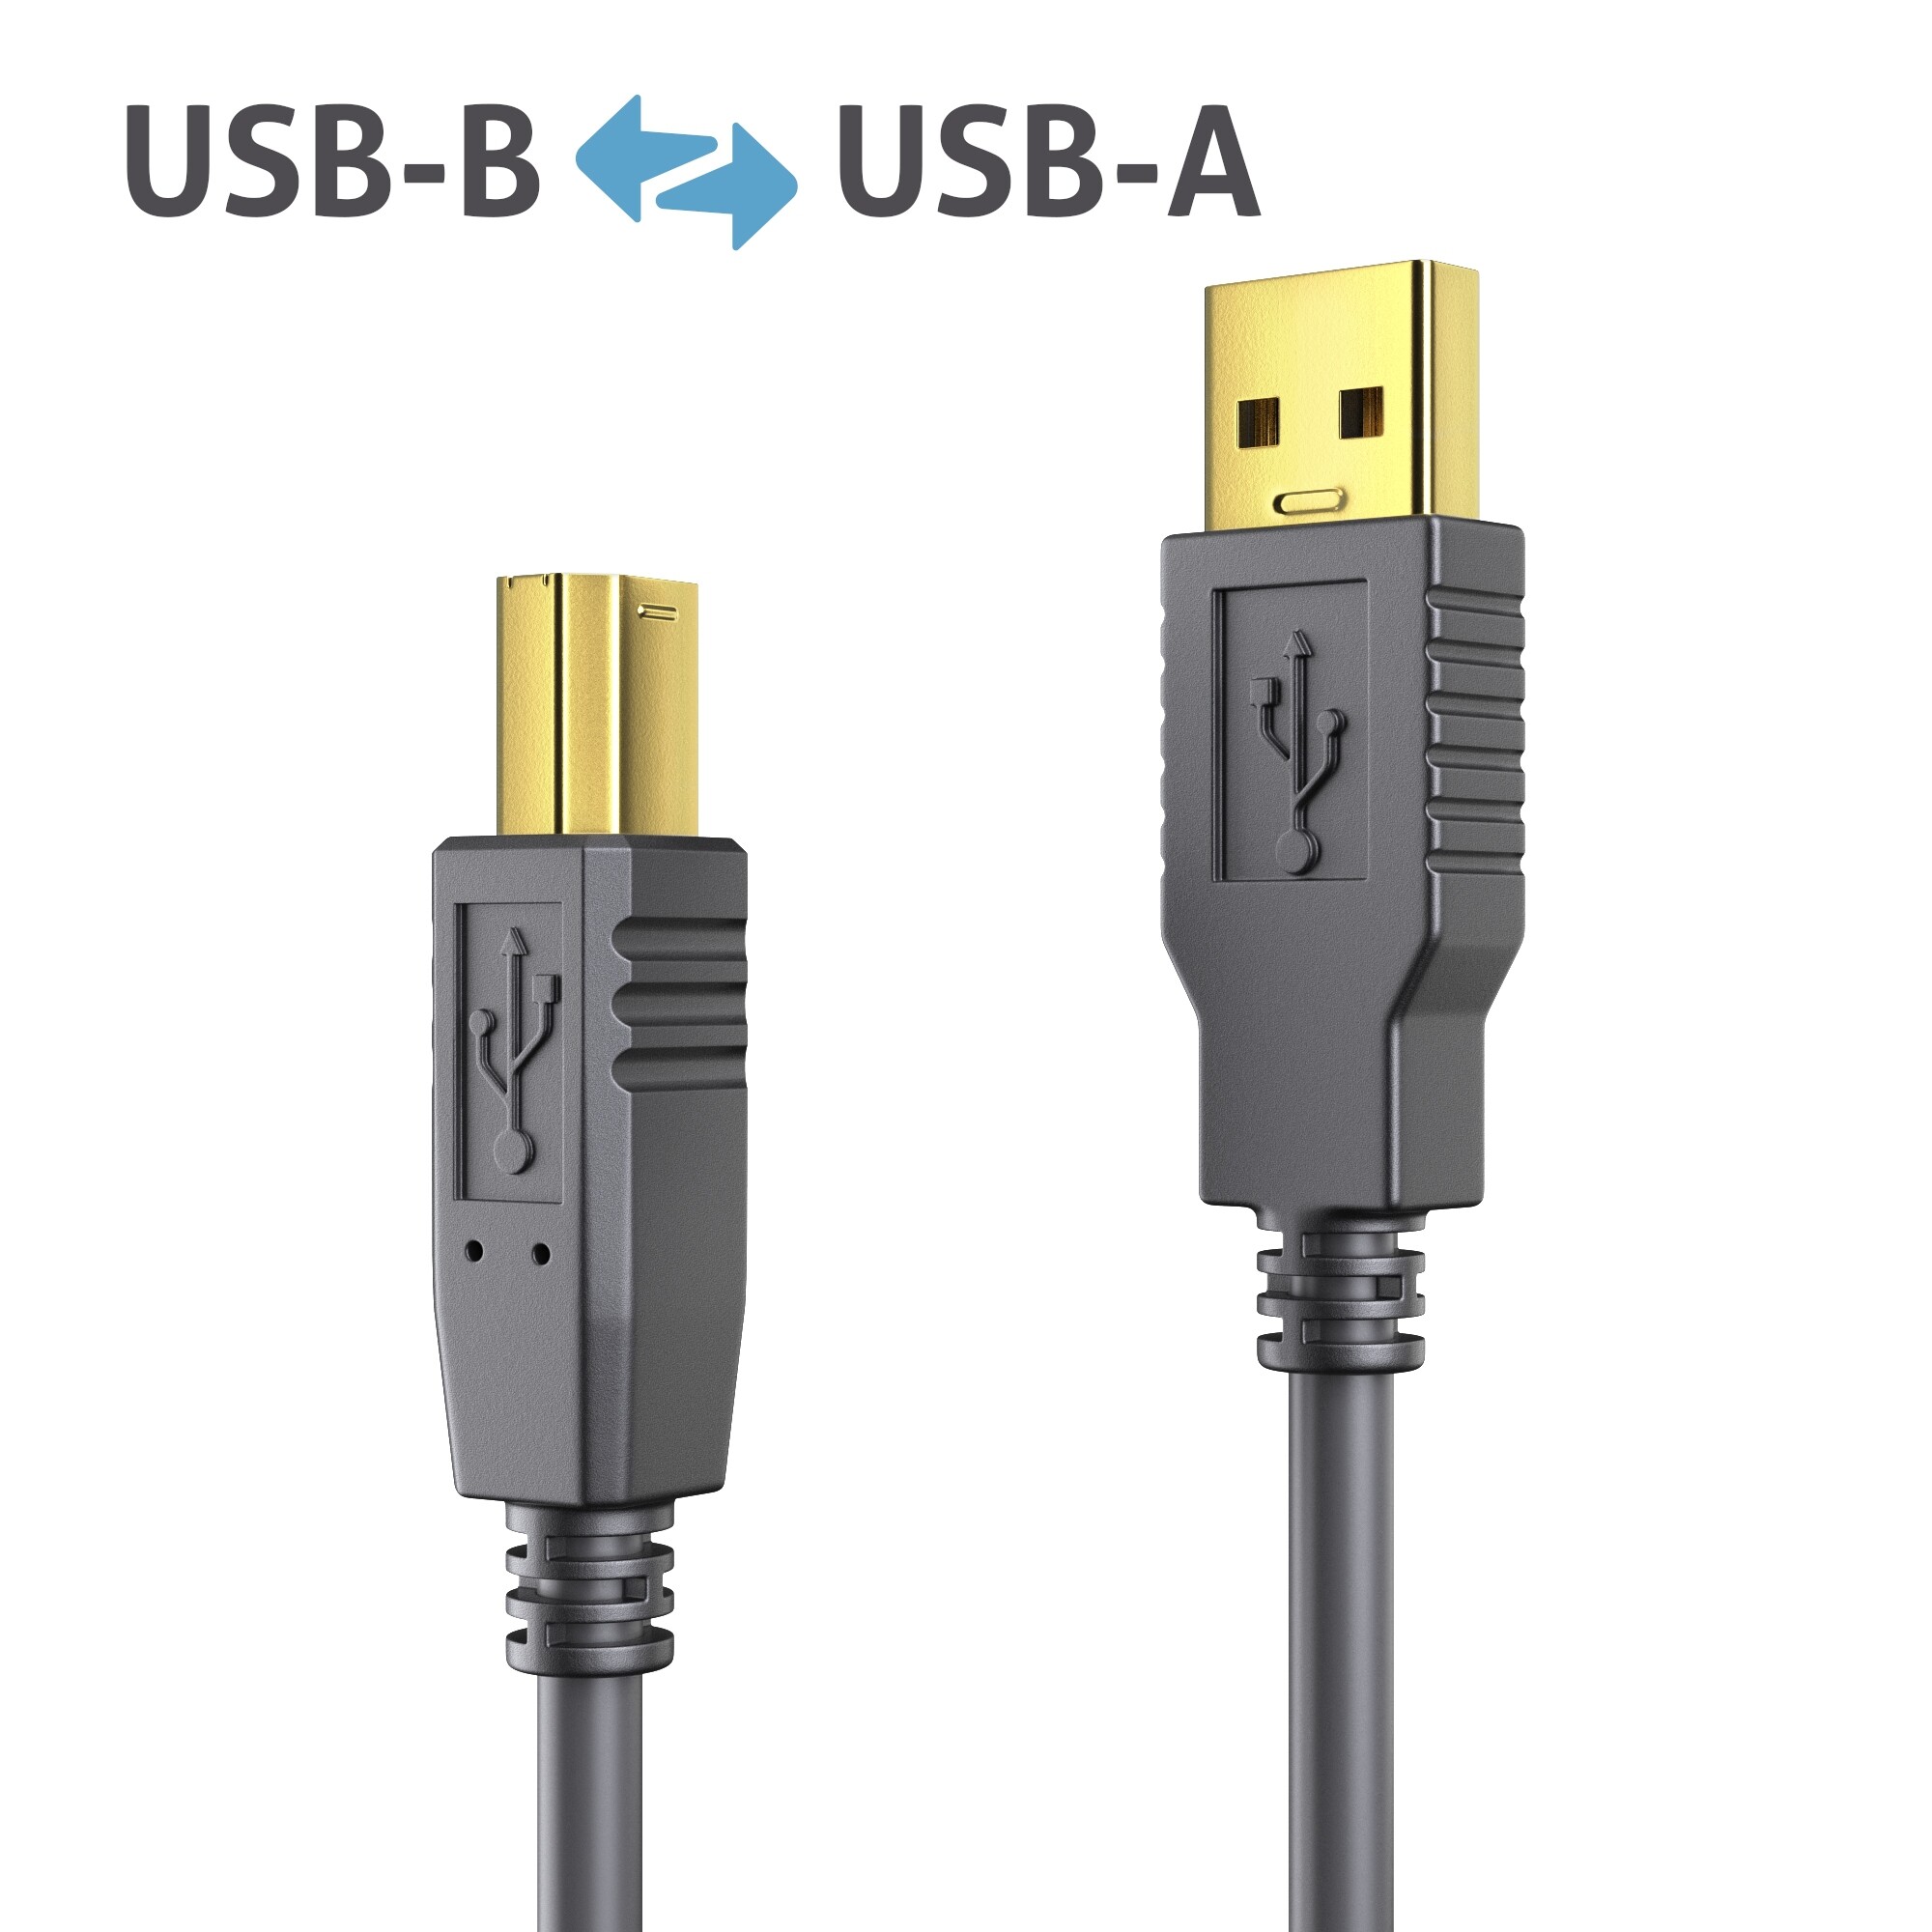 PureLink-DS2000-050-USB-2-0-Aktiv-Kabel-schwarz-5m